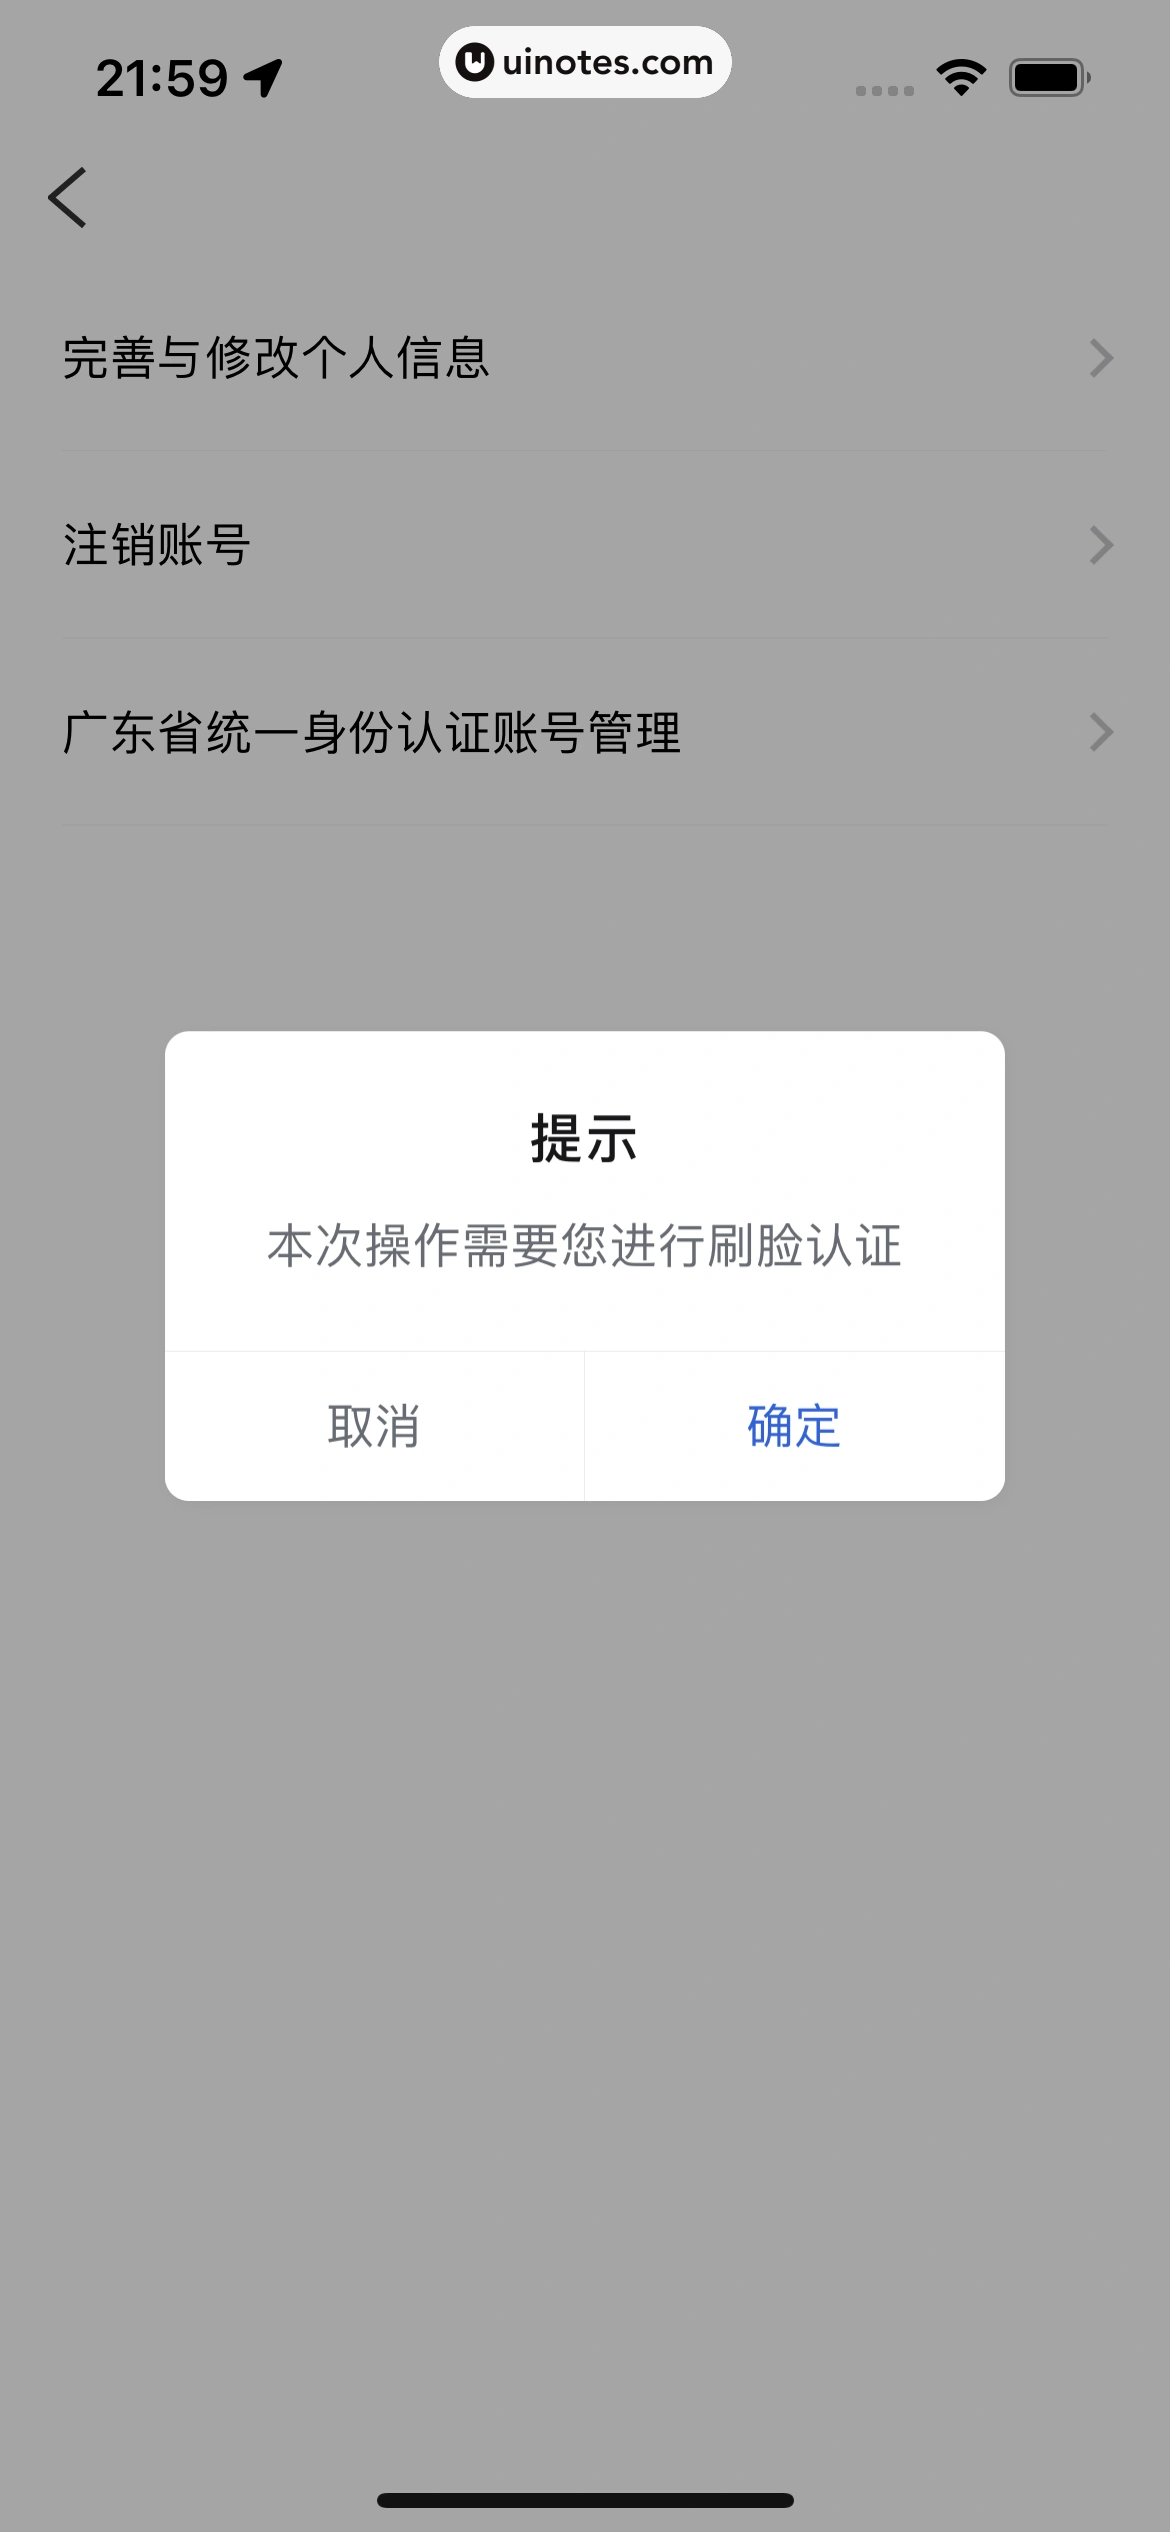 粤省事 App 截图 138 - UI Notes